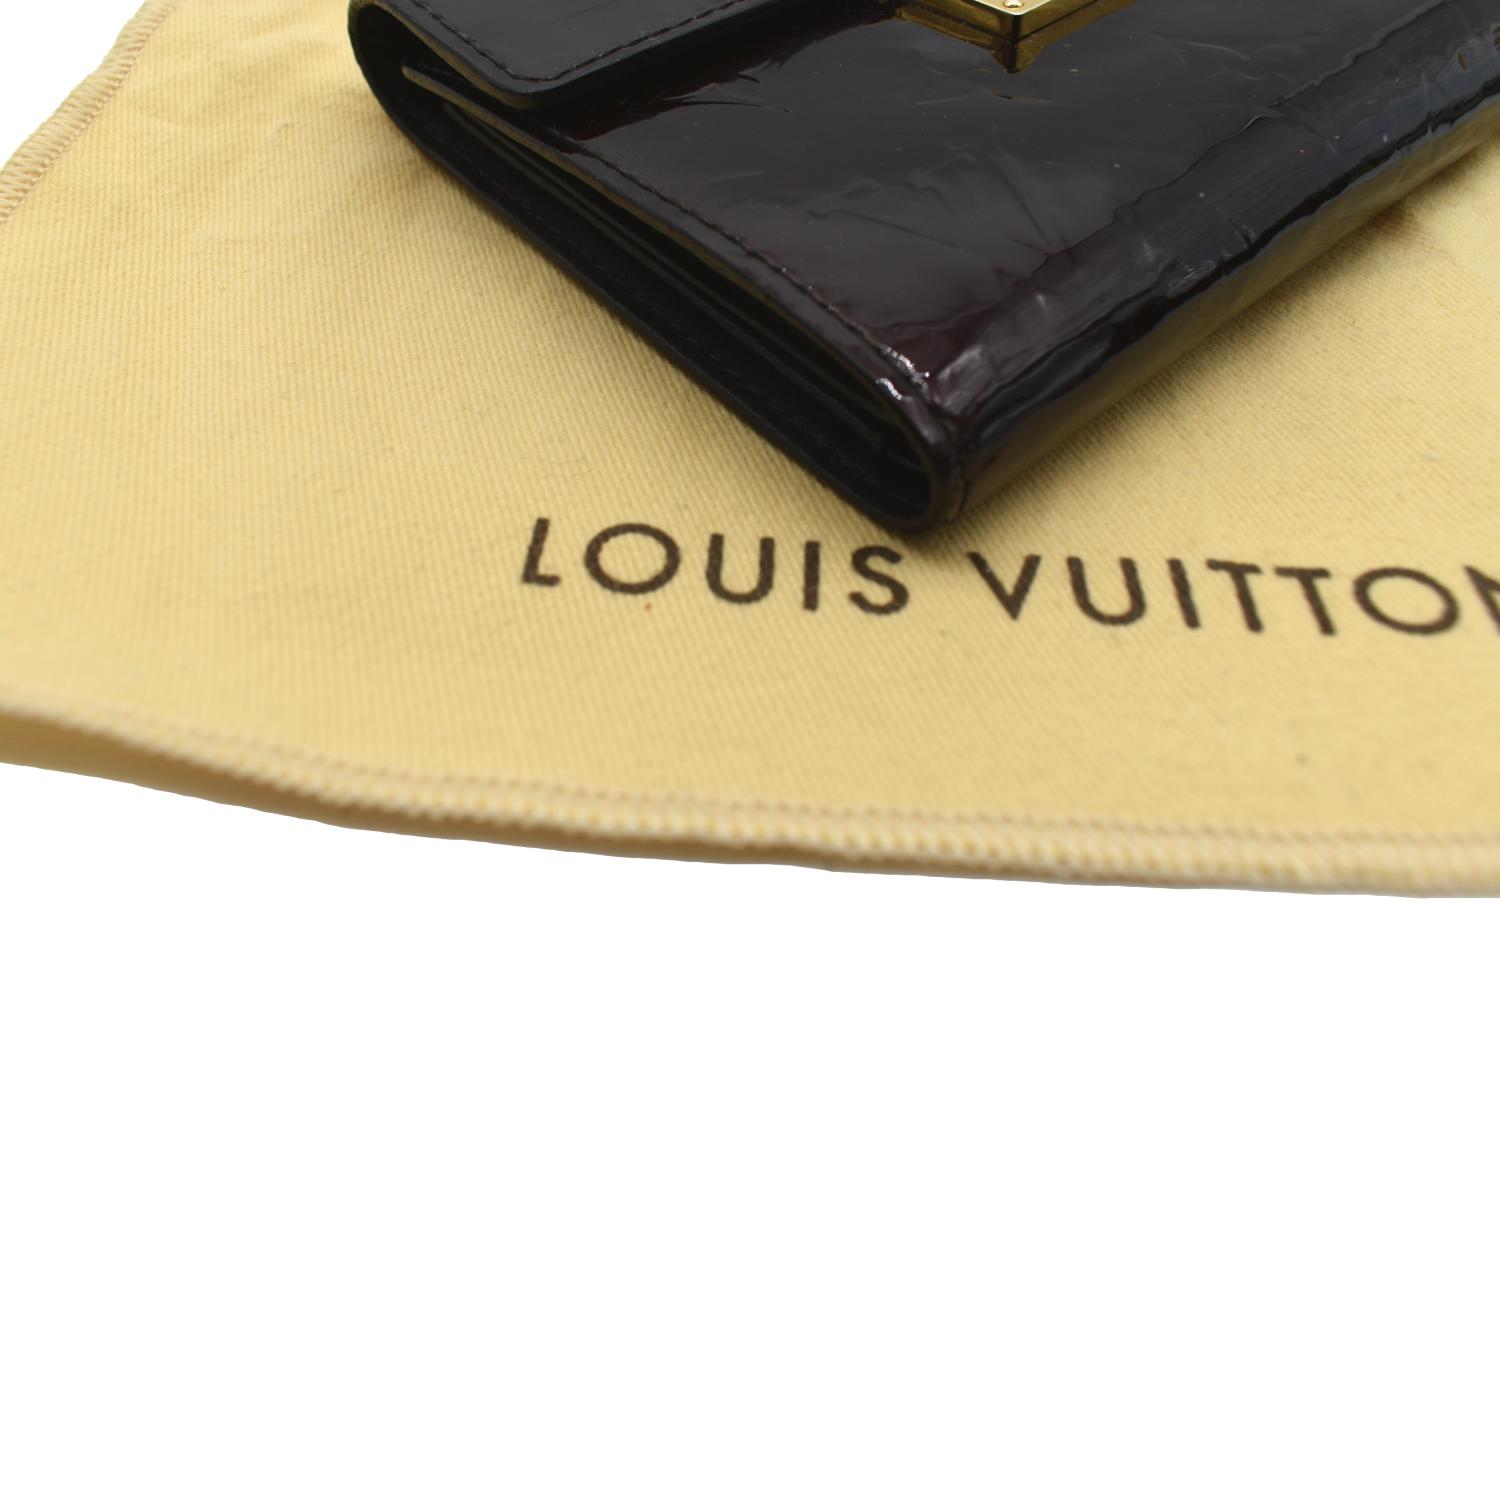 Louis Vuitton Koala Vernis Wallet for Sale in Fairfield, CA - OfferUp